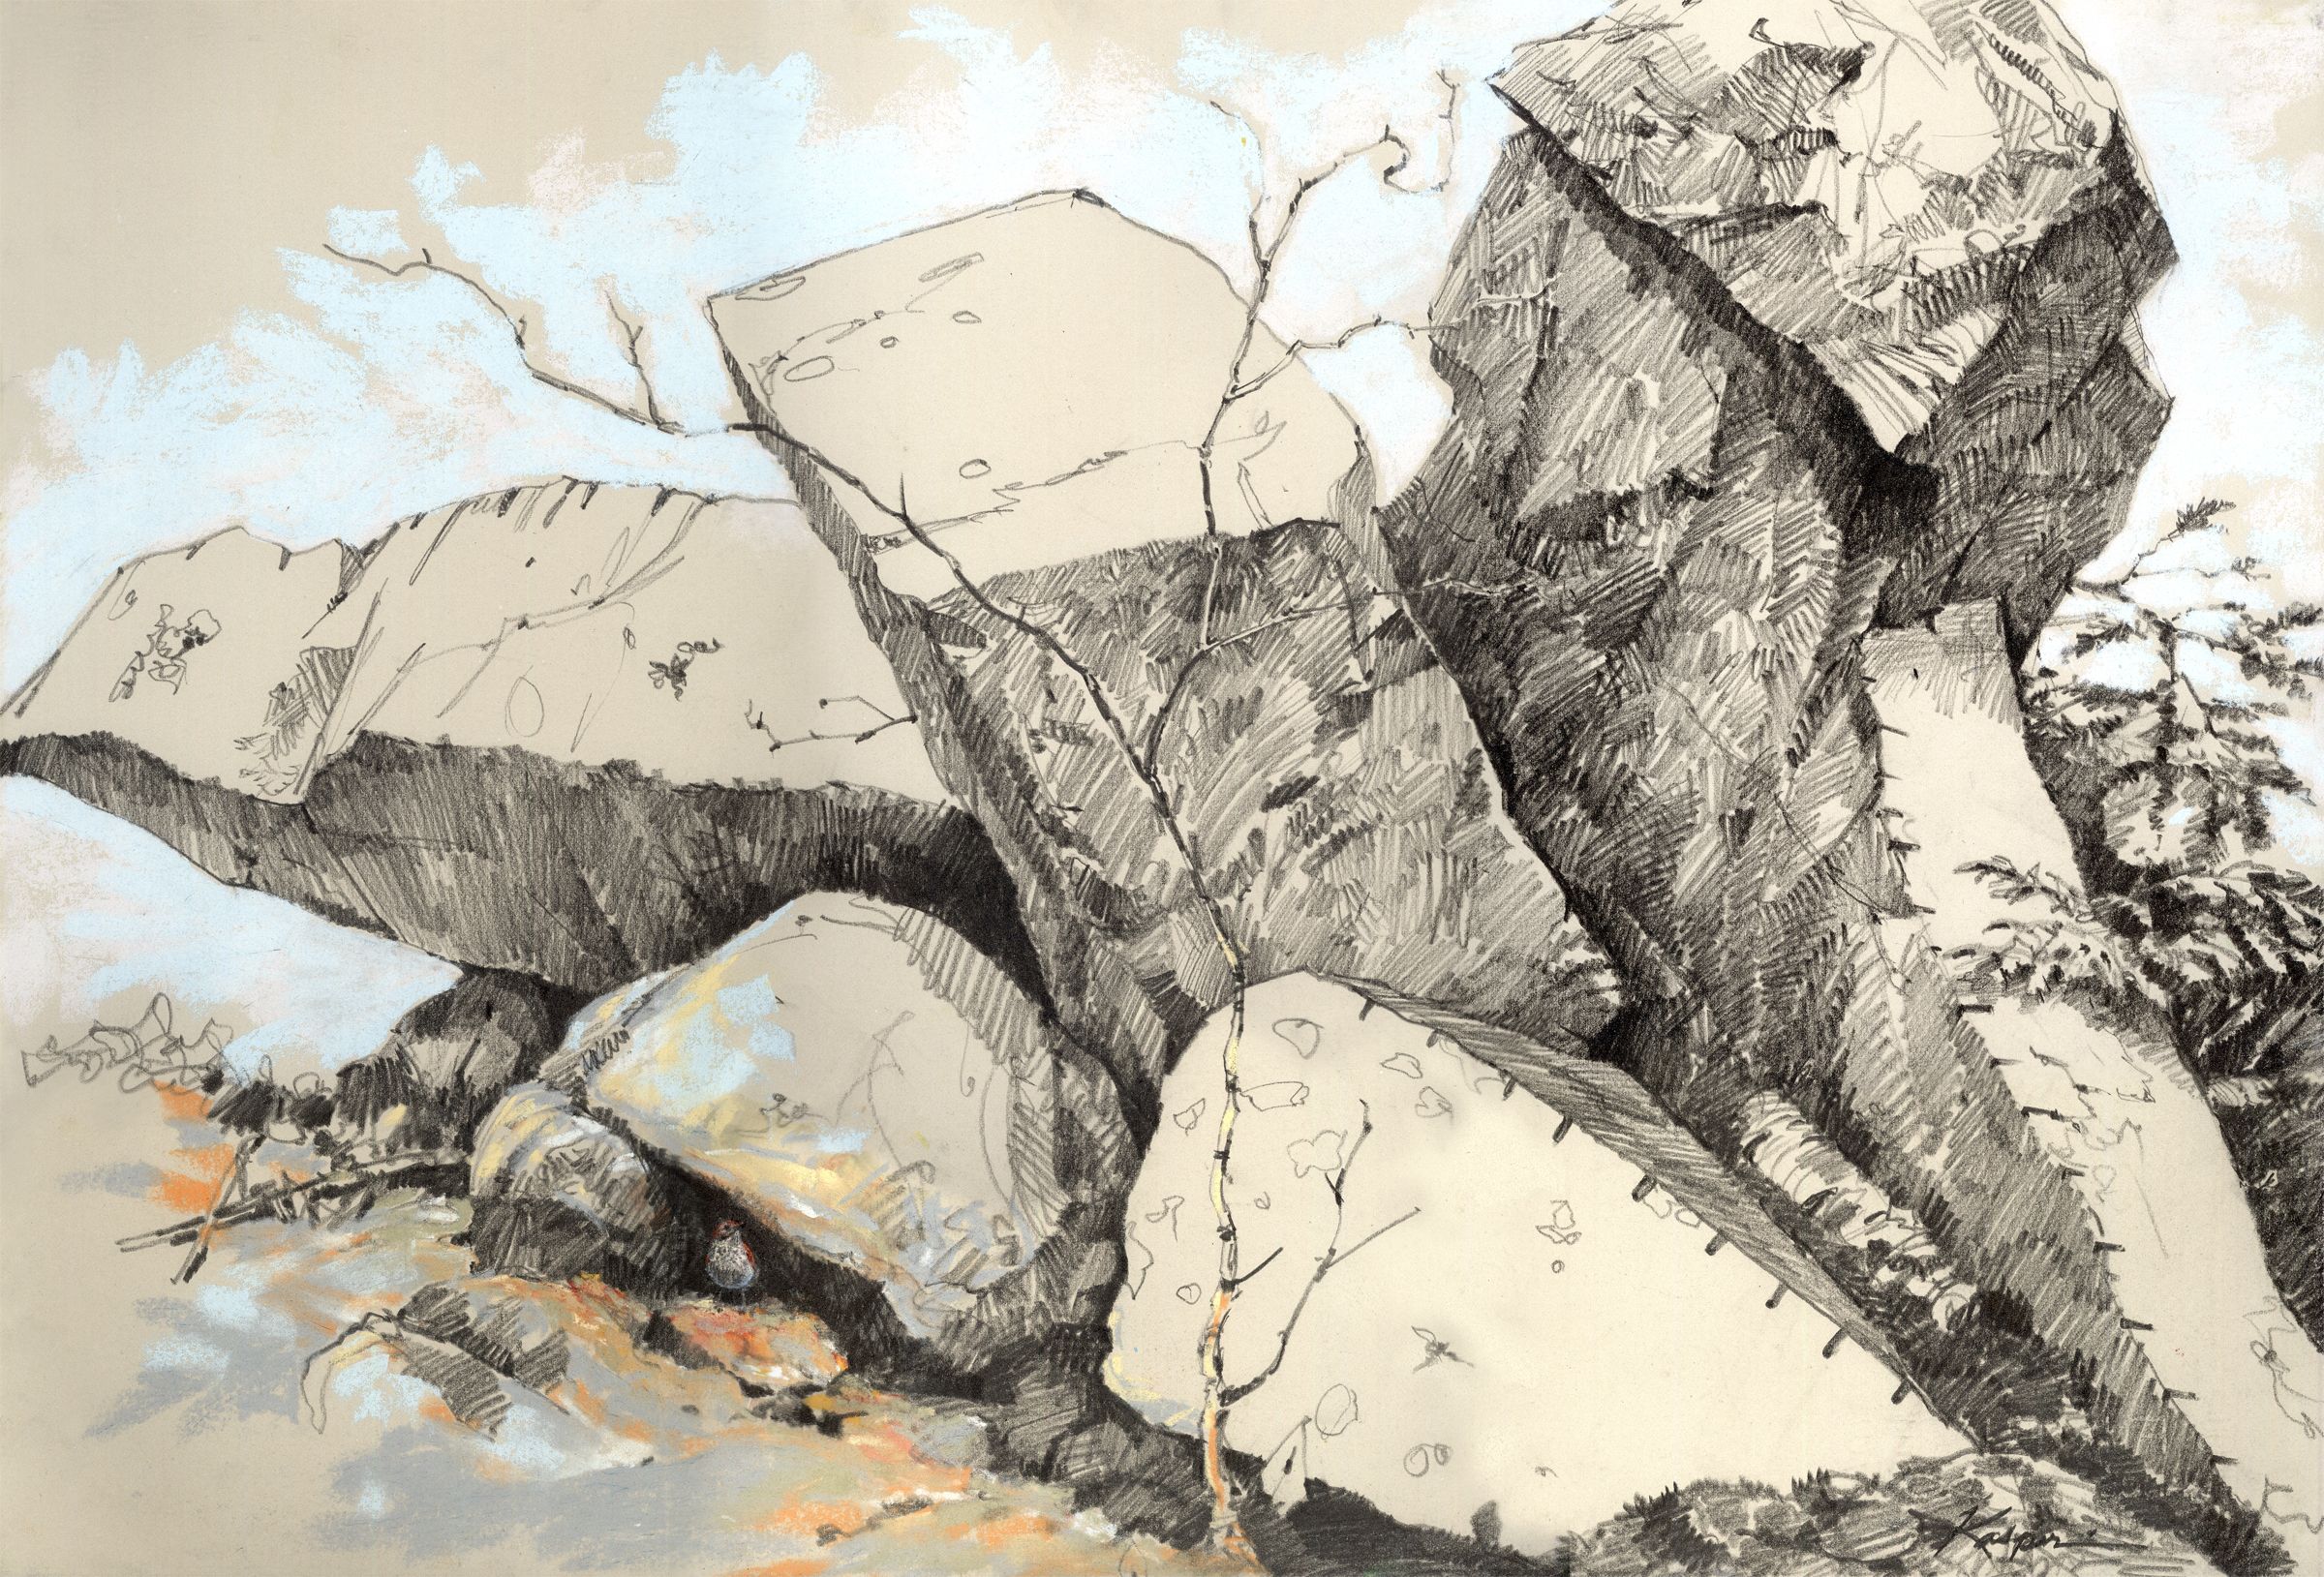 Рисунок камня карандашом: Основы рисунка. Часть 19 — как рисовать камни